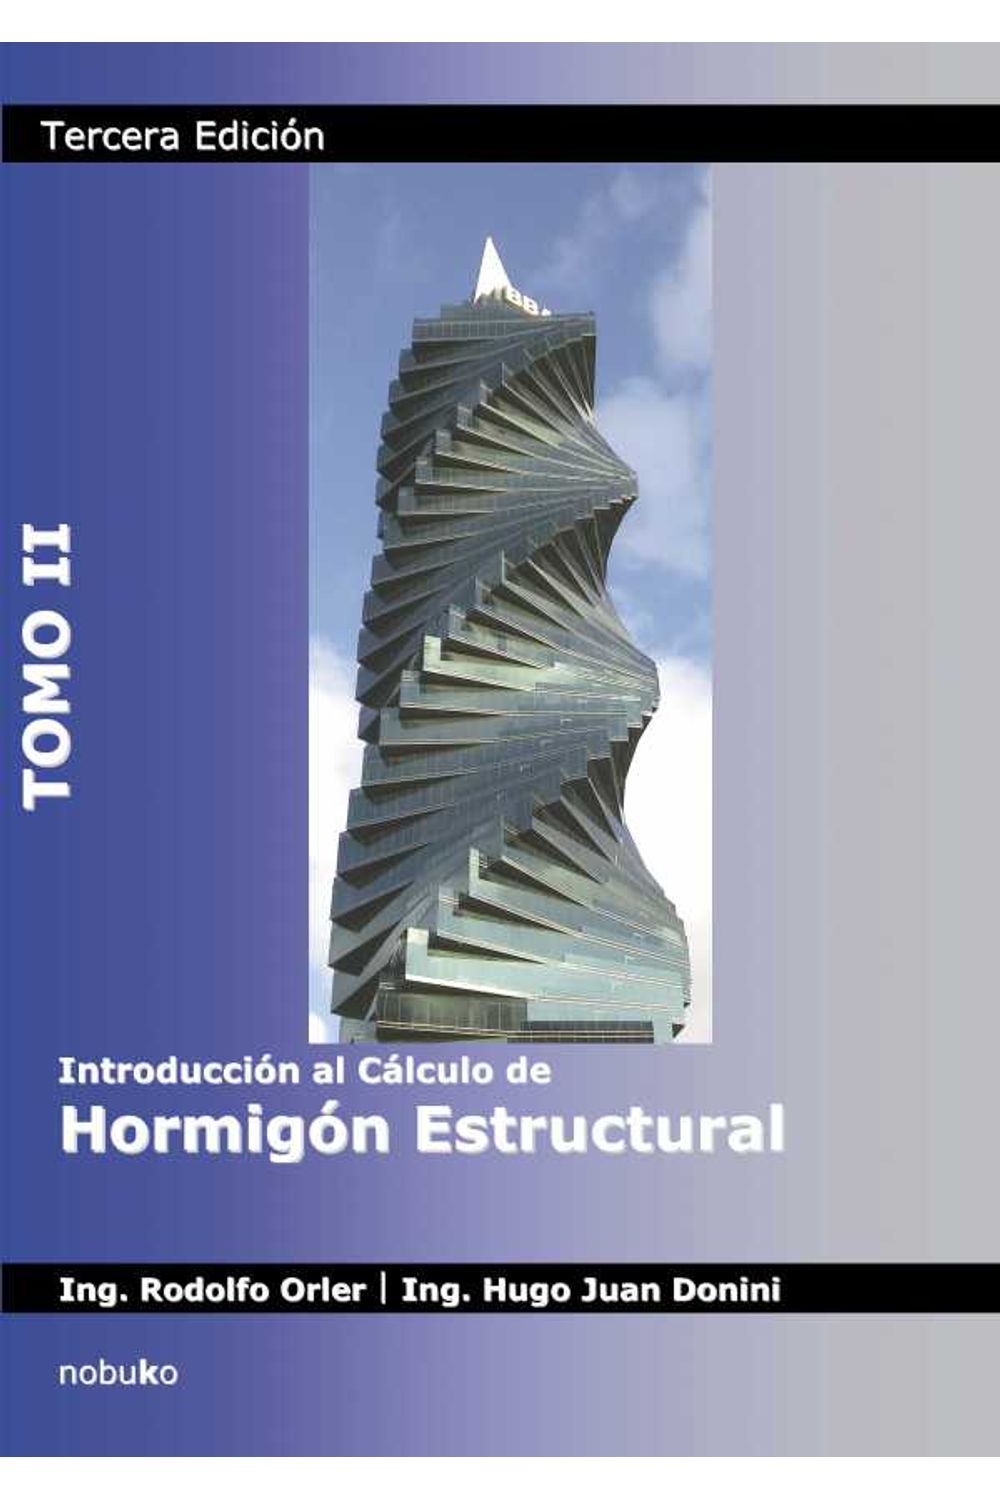 bm-introduccion-al-calculo-de-hormigon-estructural-tomo-2-3ra-ed-actualizada-nobukodiseno-editorial-9789875846029